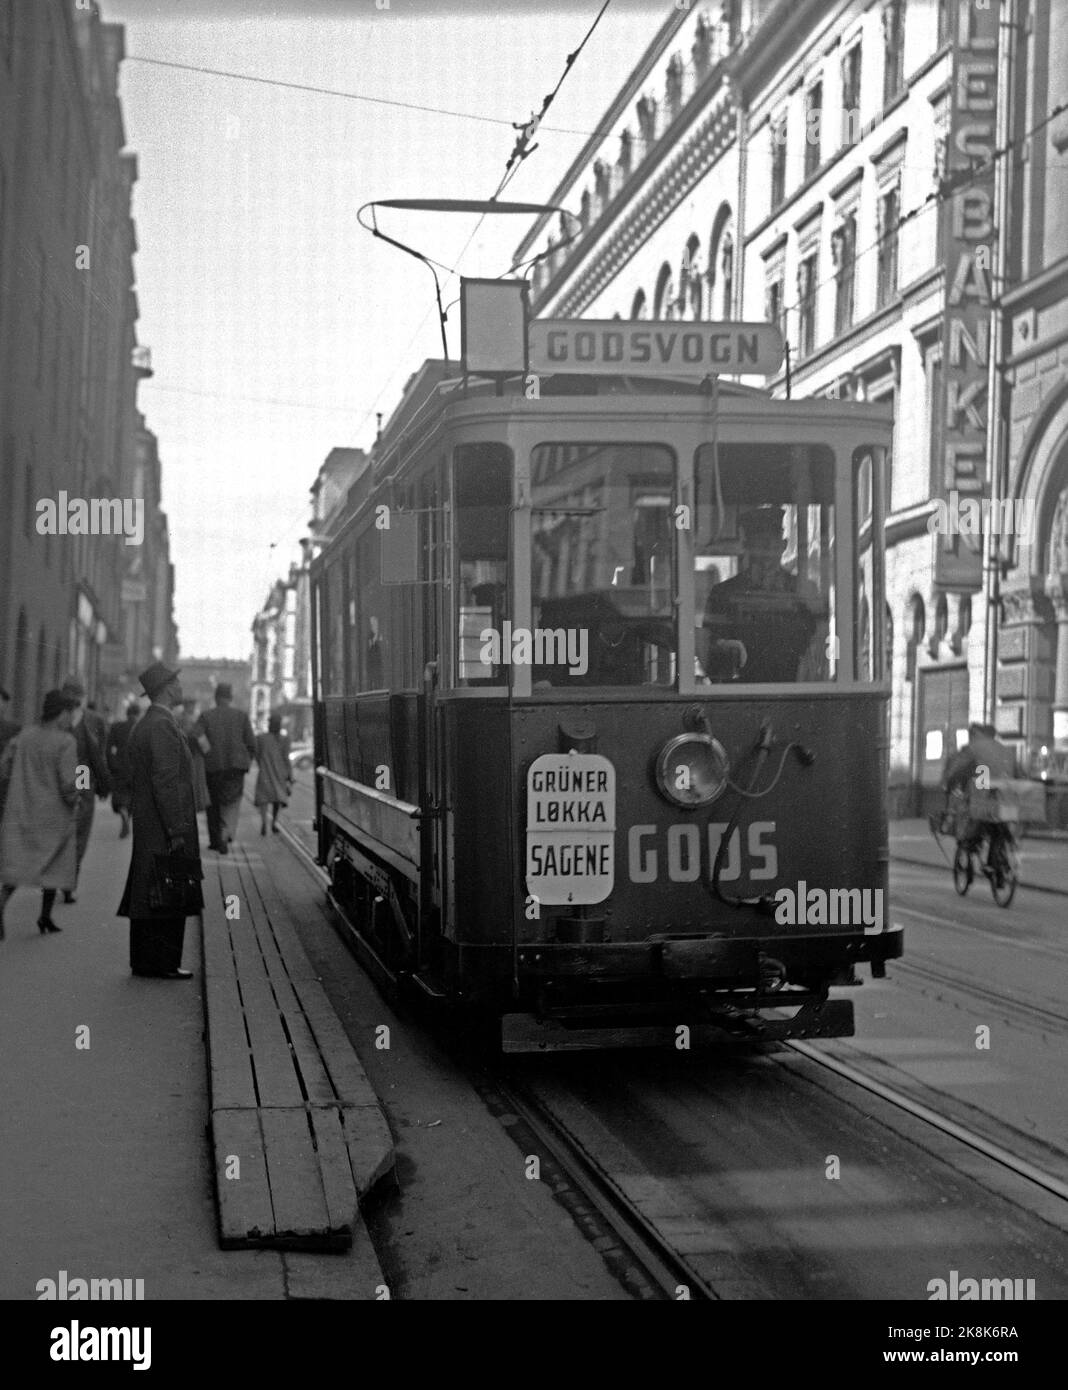 Oslo Maggio 1940 Oslo Sporveier gestisce il traffico merci con il tram. Qui il Freemolen segnò Grünerløkka / Sagene. Trasporto. Foto: NTB / NTB Foto Stock